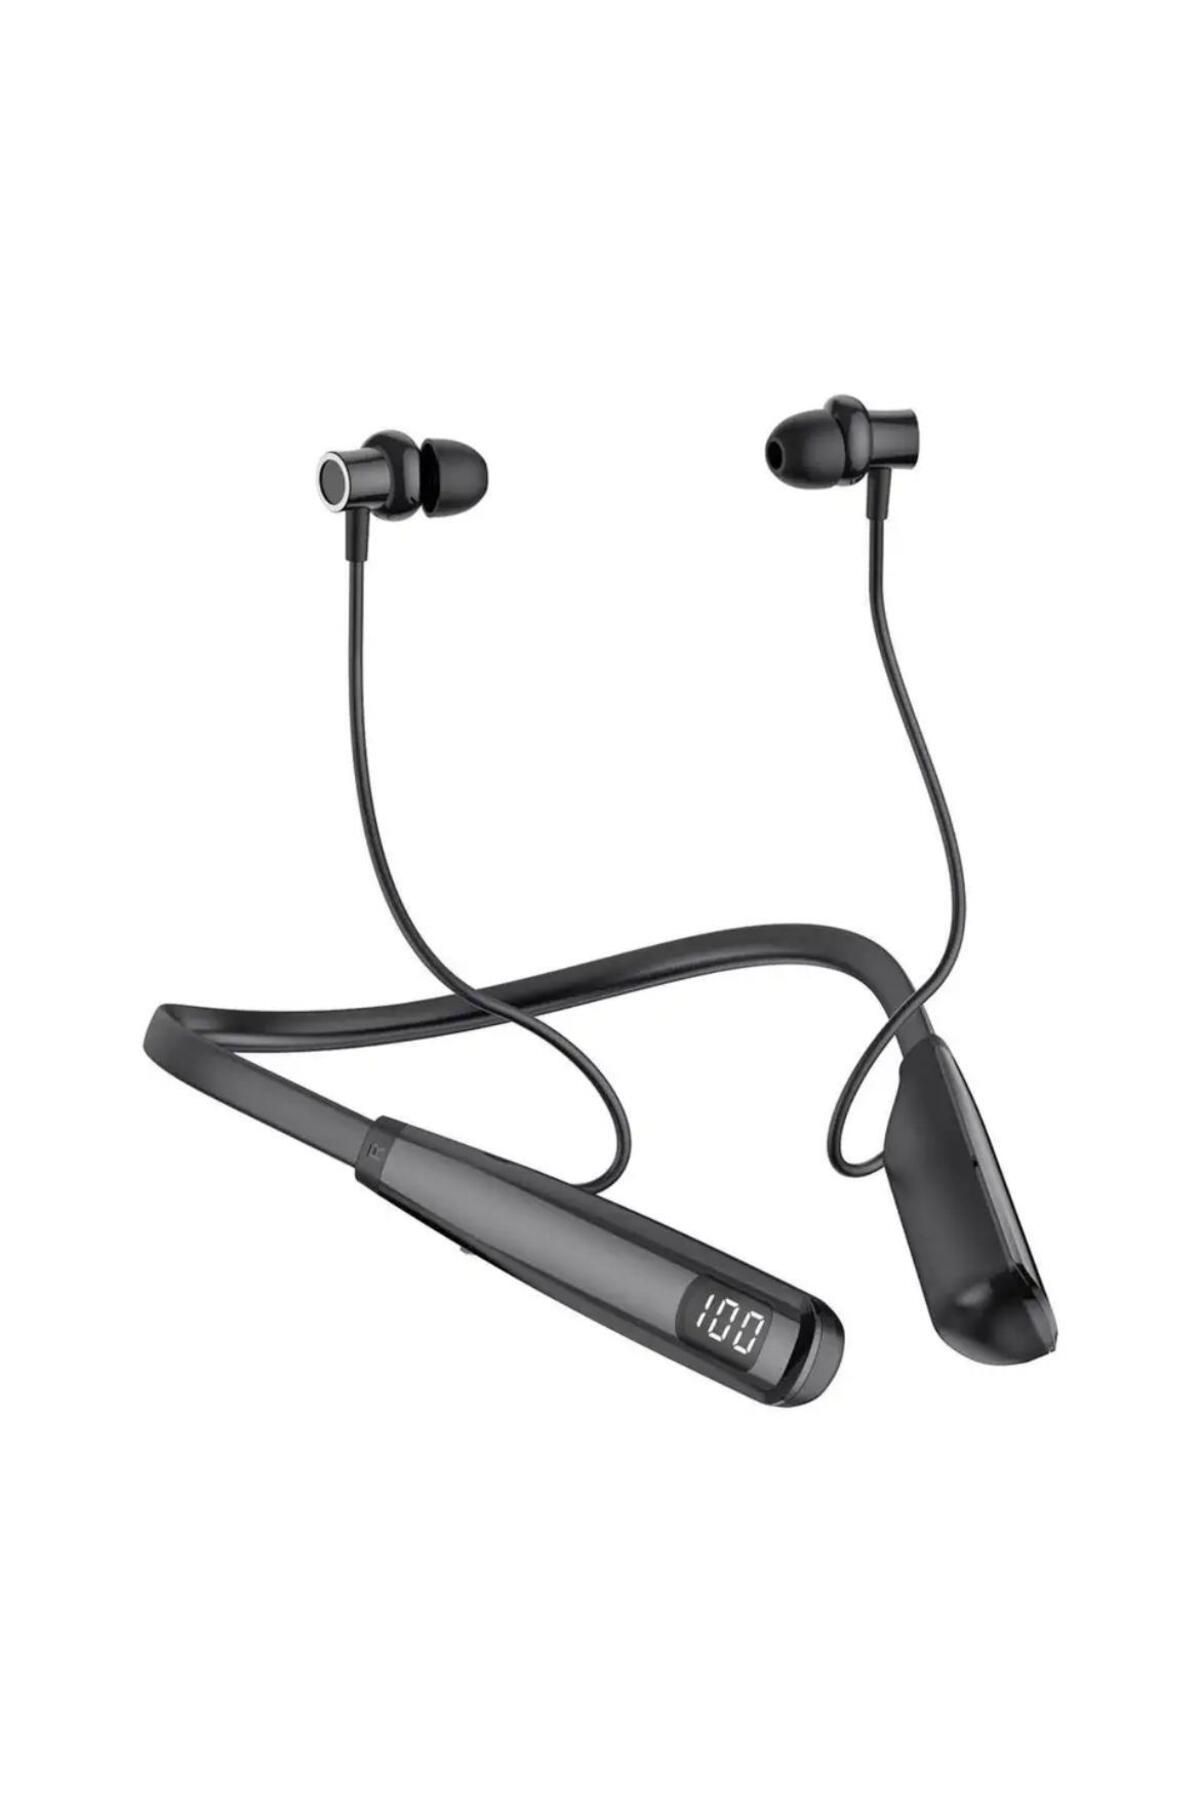 Mi7a Y10 Sporcu Bluetooth Kulaklık 100 Saat Şarj Kapasiteli LCD Şarj Göstergeli Boyun Bantlı Kulaklık